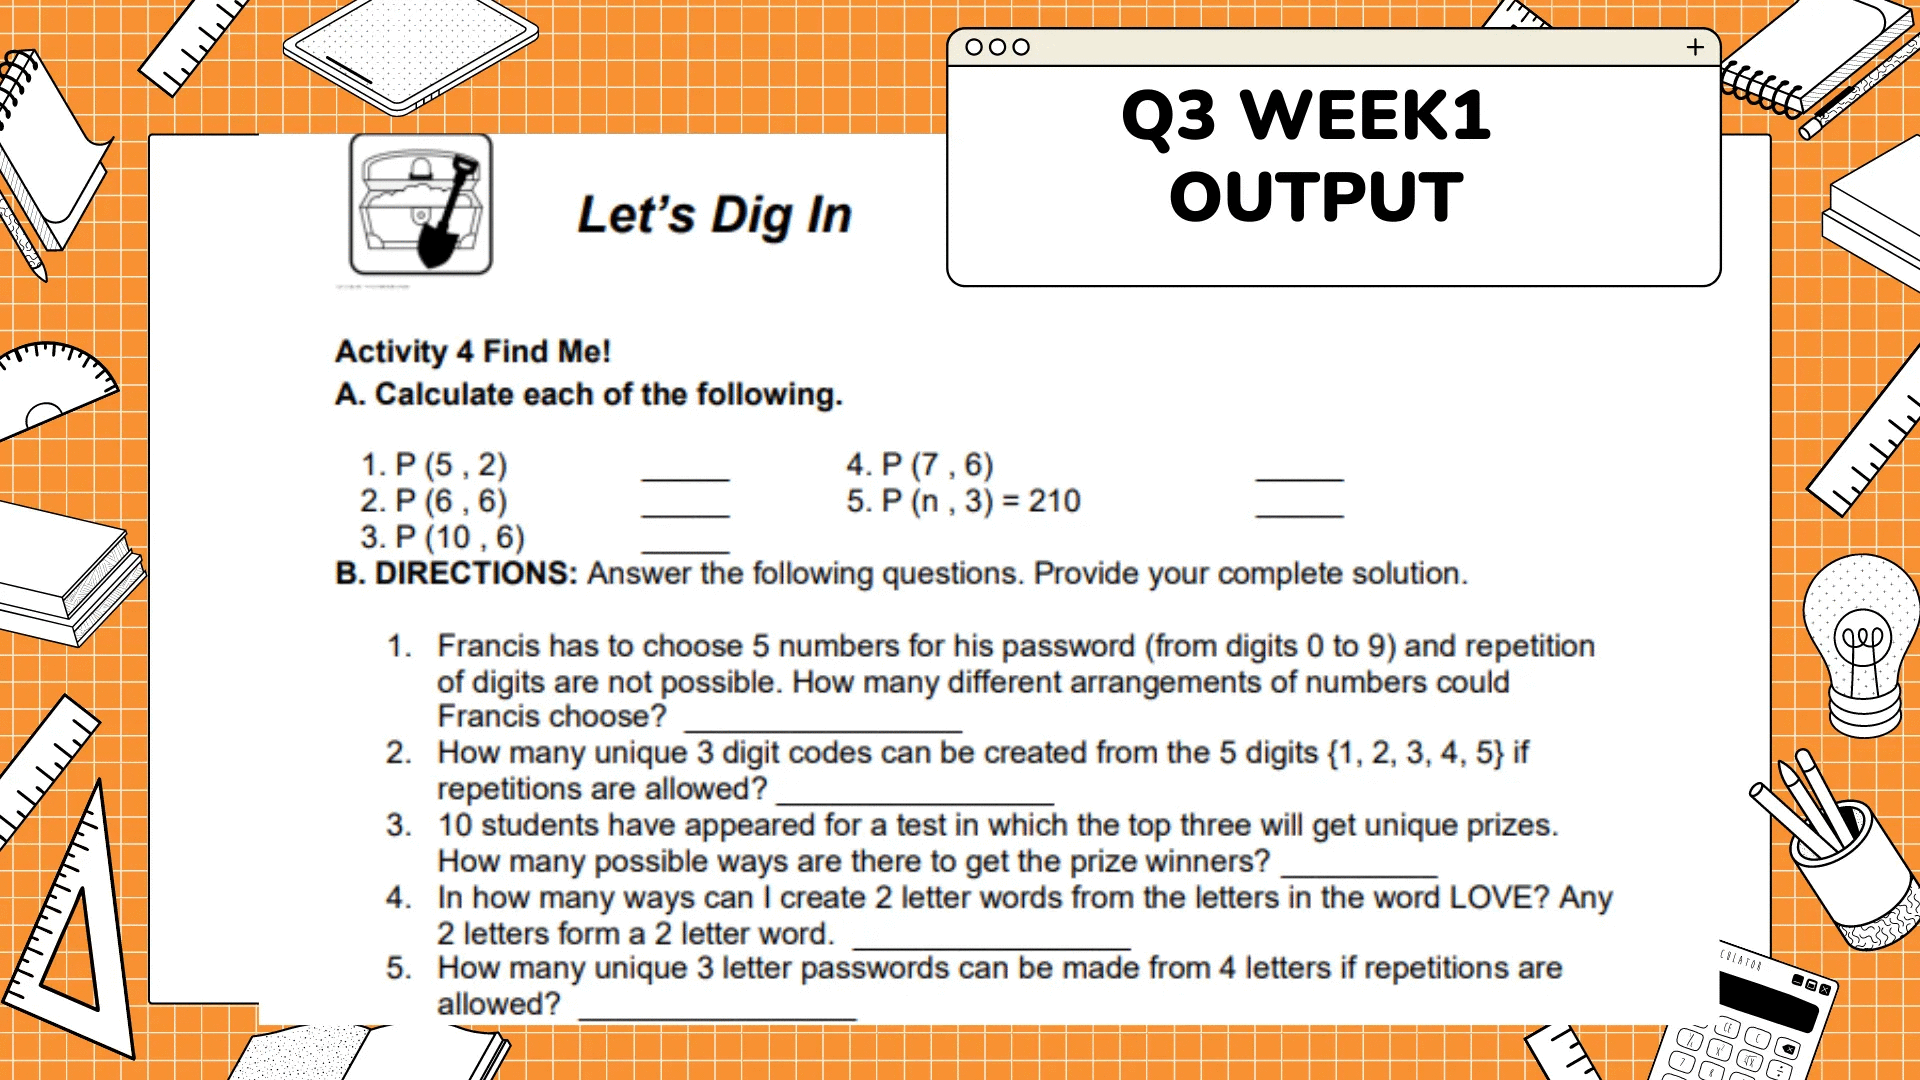 זיויויון
ليليليليليل
וויויויז
000
Q3 WEEK1
OUTPUT
Let's Dig In
Activity 4 Find Me!
A. Calculate each of the following.
1. P (5,2)
4. P (7,6)
2. P (6, 6)
5. P (n, 3) = 210
3. P (10,6)
B. DIRECTIONS: Answer the following questions. Provide your complete solution.
1. Francis has to choose 5 numbers for his password (from digits 0 to 9) and repetition
of digits are not possible. How many different arrangements of numbers could
Francis choose?
2. How many unique 3 digit codes can be created from the 5 digits {1, 2, 3, 4, 5} if
repetitions are allowed?
3. 10 students have appeared for a test in which the top three will get unique prizes.
How many possible ways are there to get the prize winners?
4.
In how many ways can I create 2 letter words from the letters in the word LOVE? Any
2 letters form a 2 letter word.
5.
How many unique 3 letter passwords can be made from 4 letters if repetitions are
allowed?
+
1
CREATOR
CE
(
X
ויויויויו